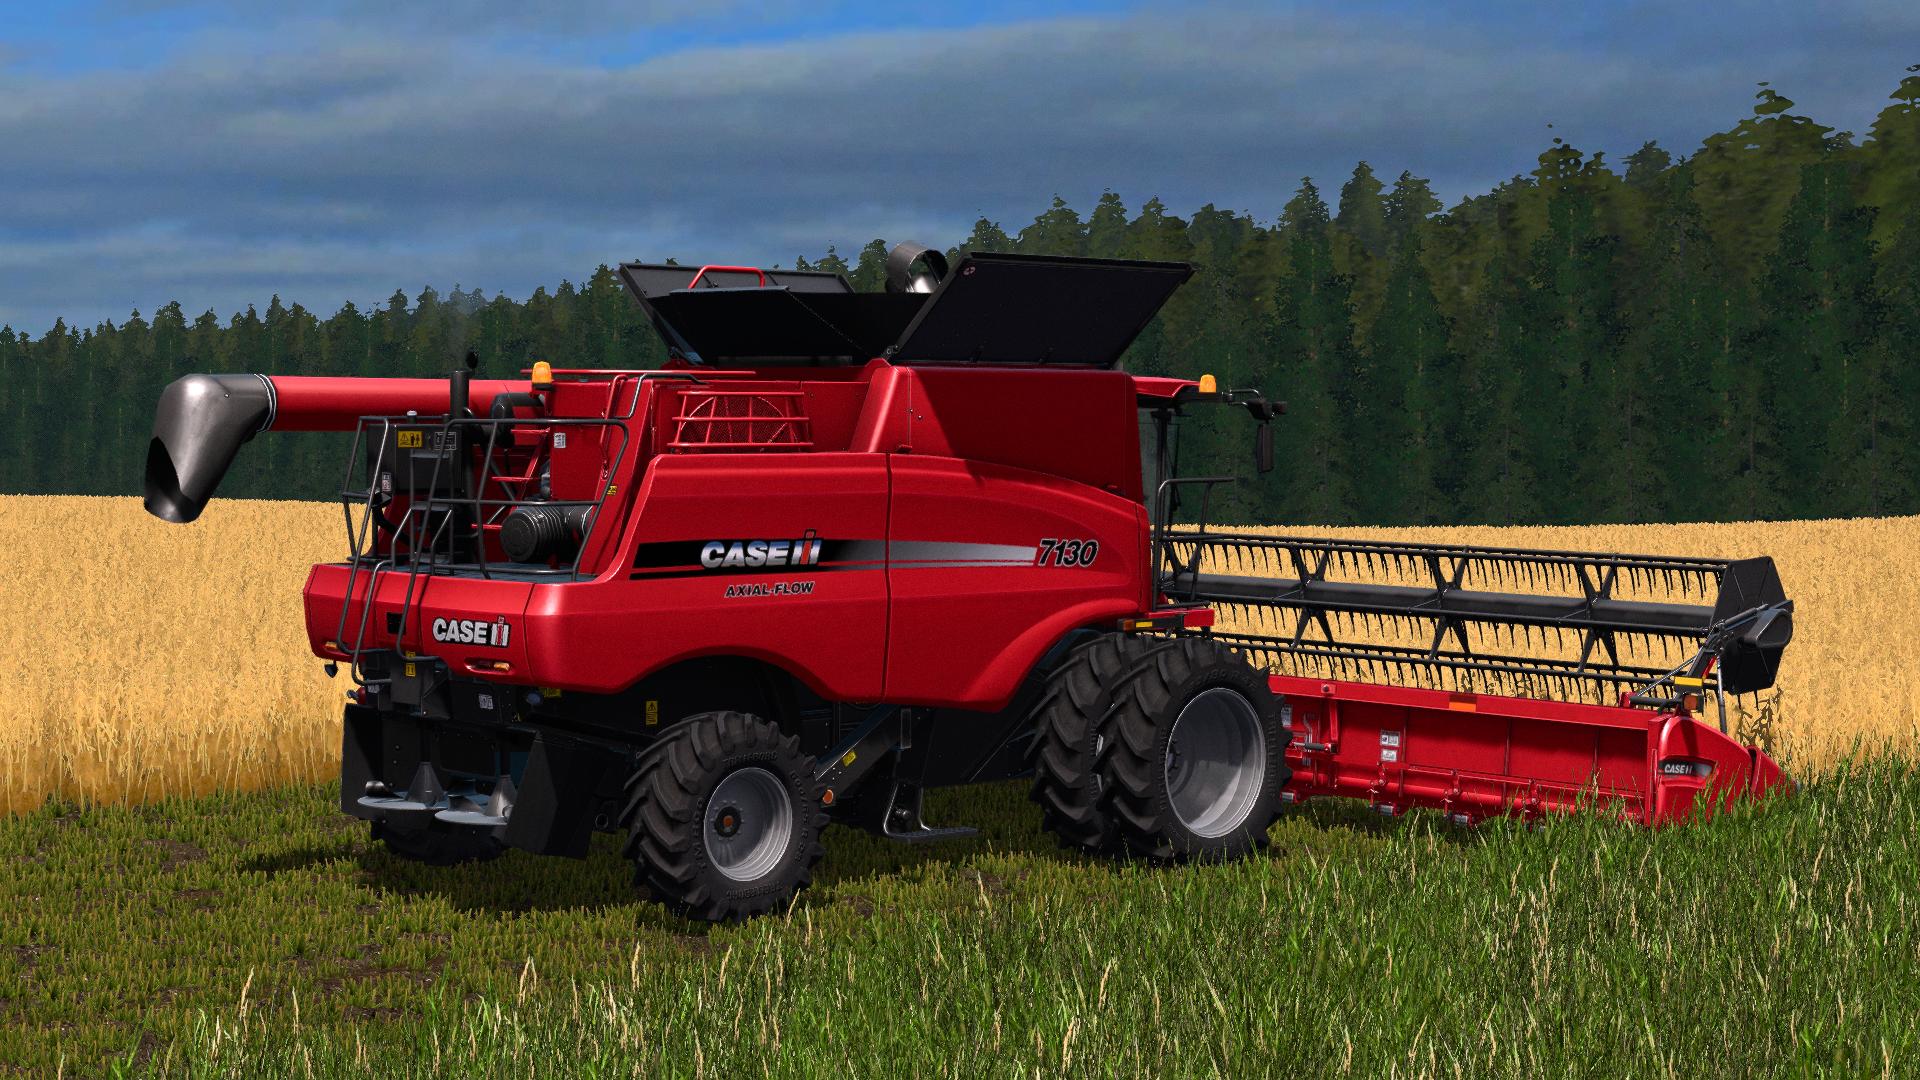 FS17 Case IH Axial-Flow X130 series v1.0 (4) - Farming simulator 19 / 17 / ...